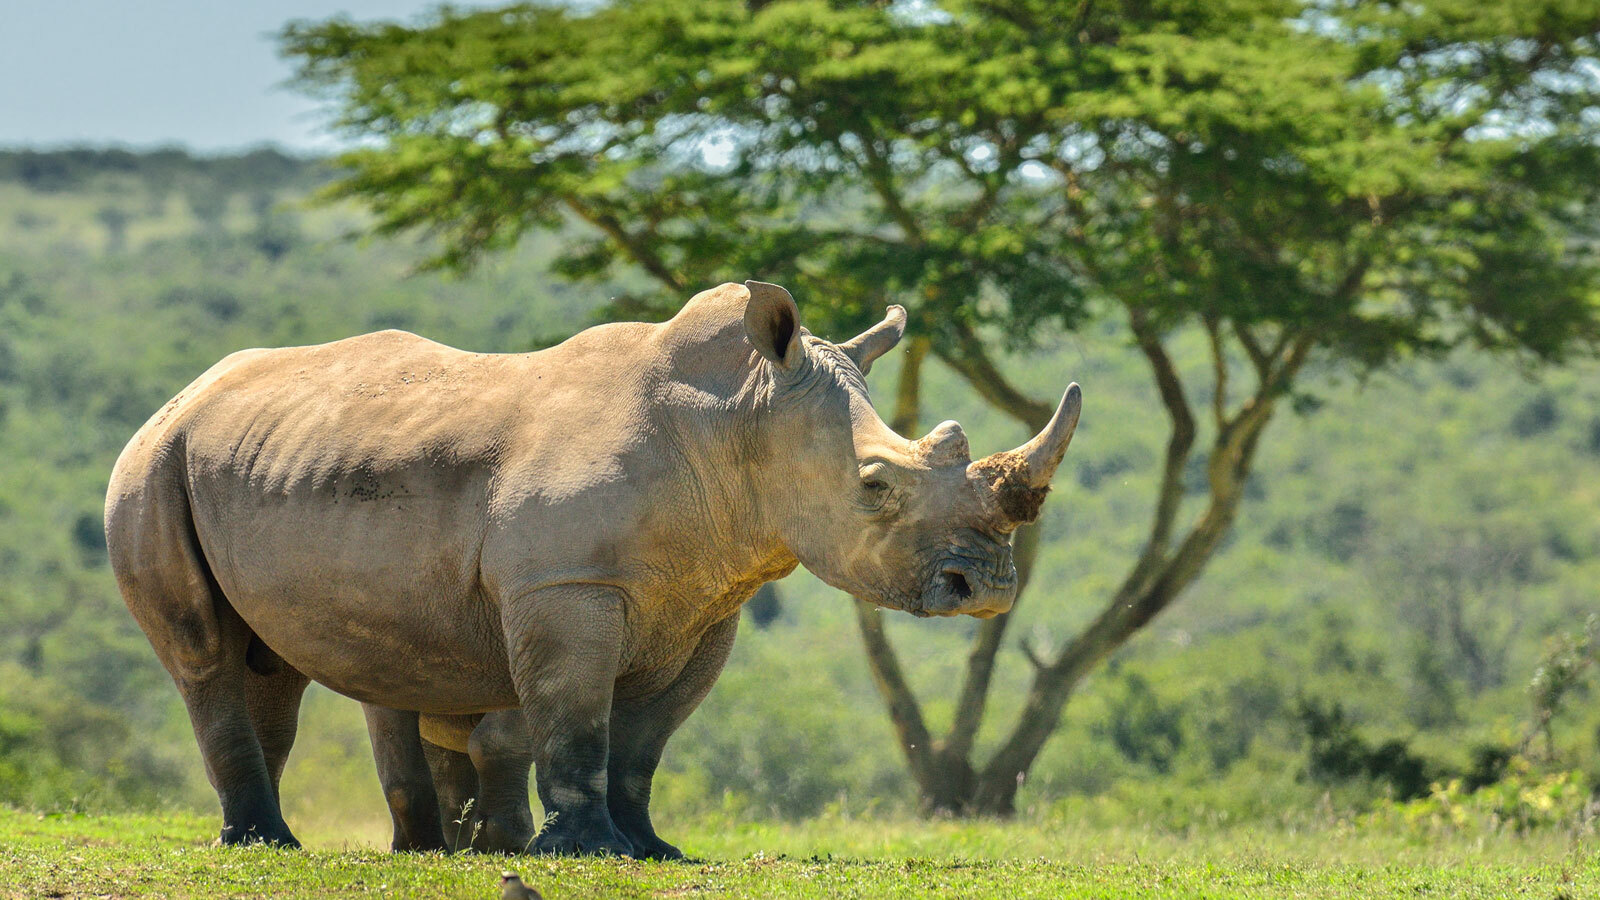 A white rhino stands in a field